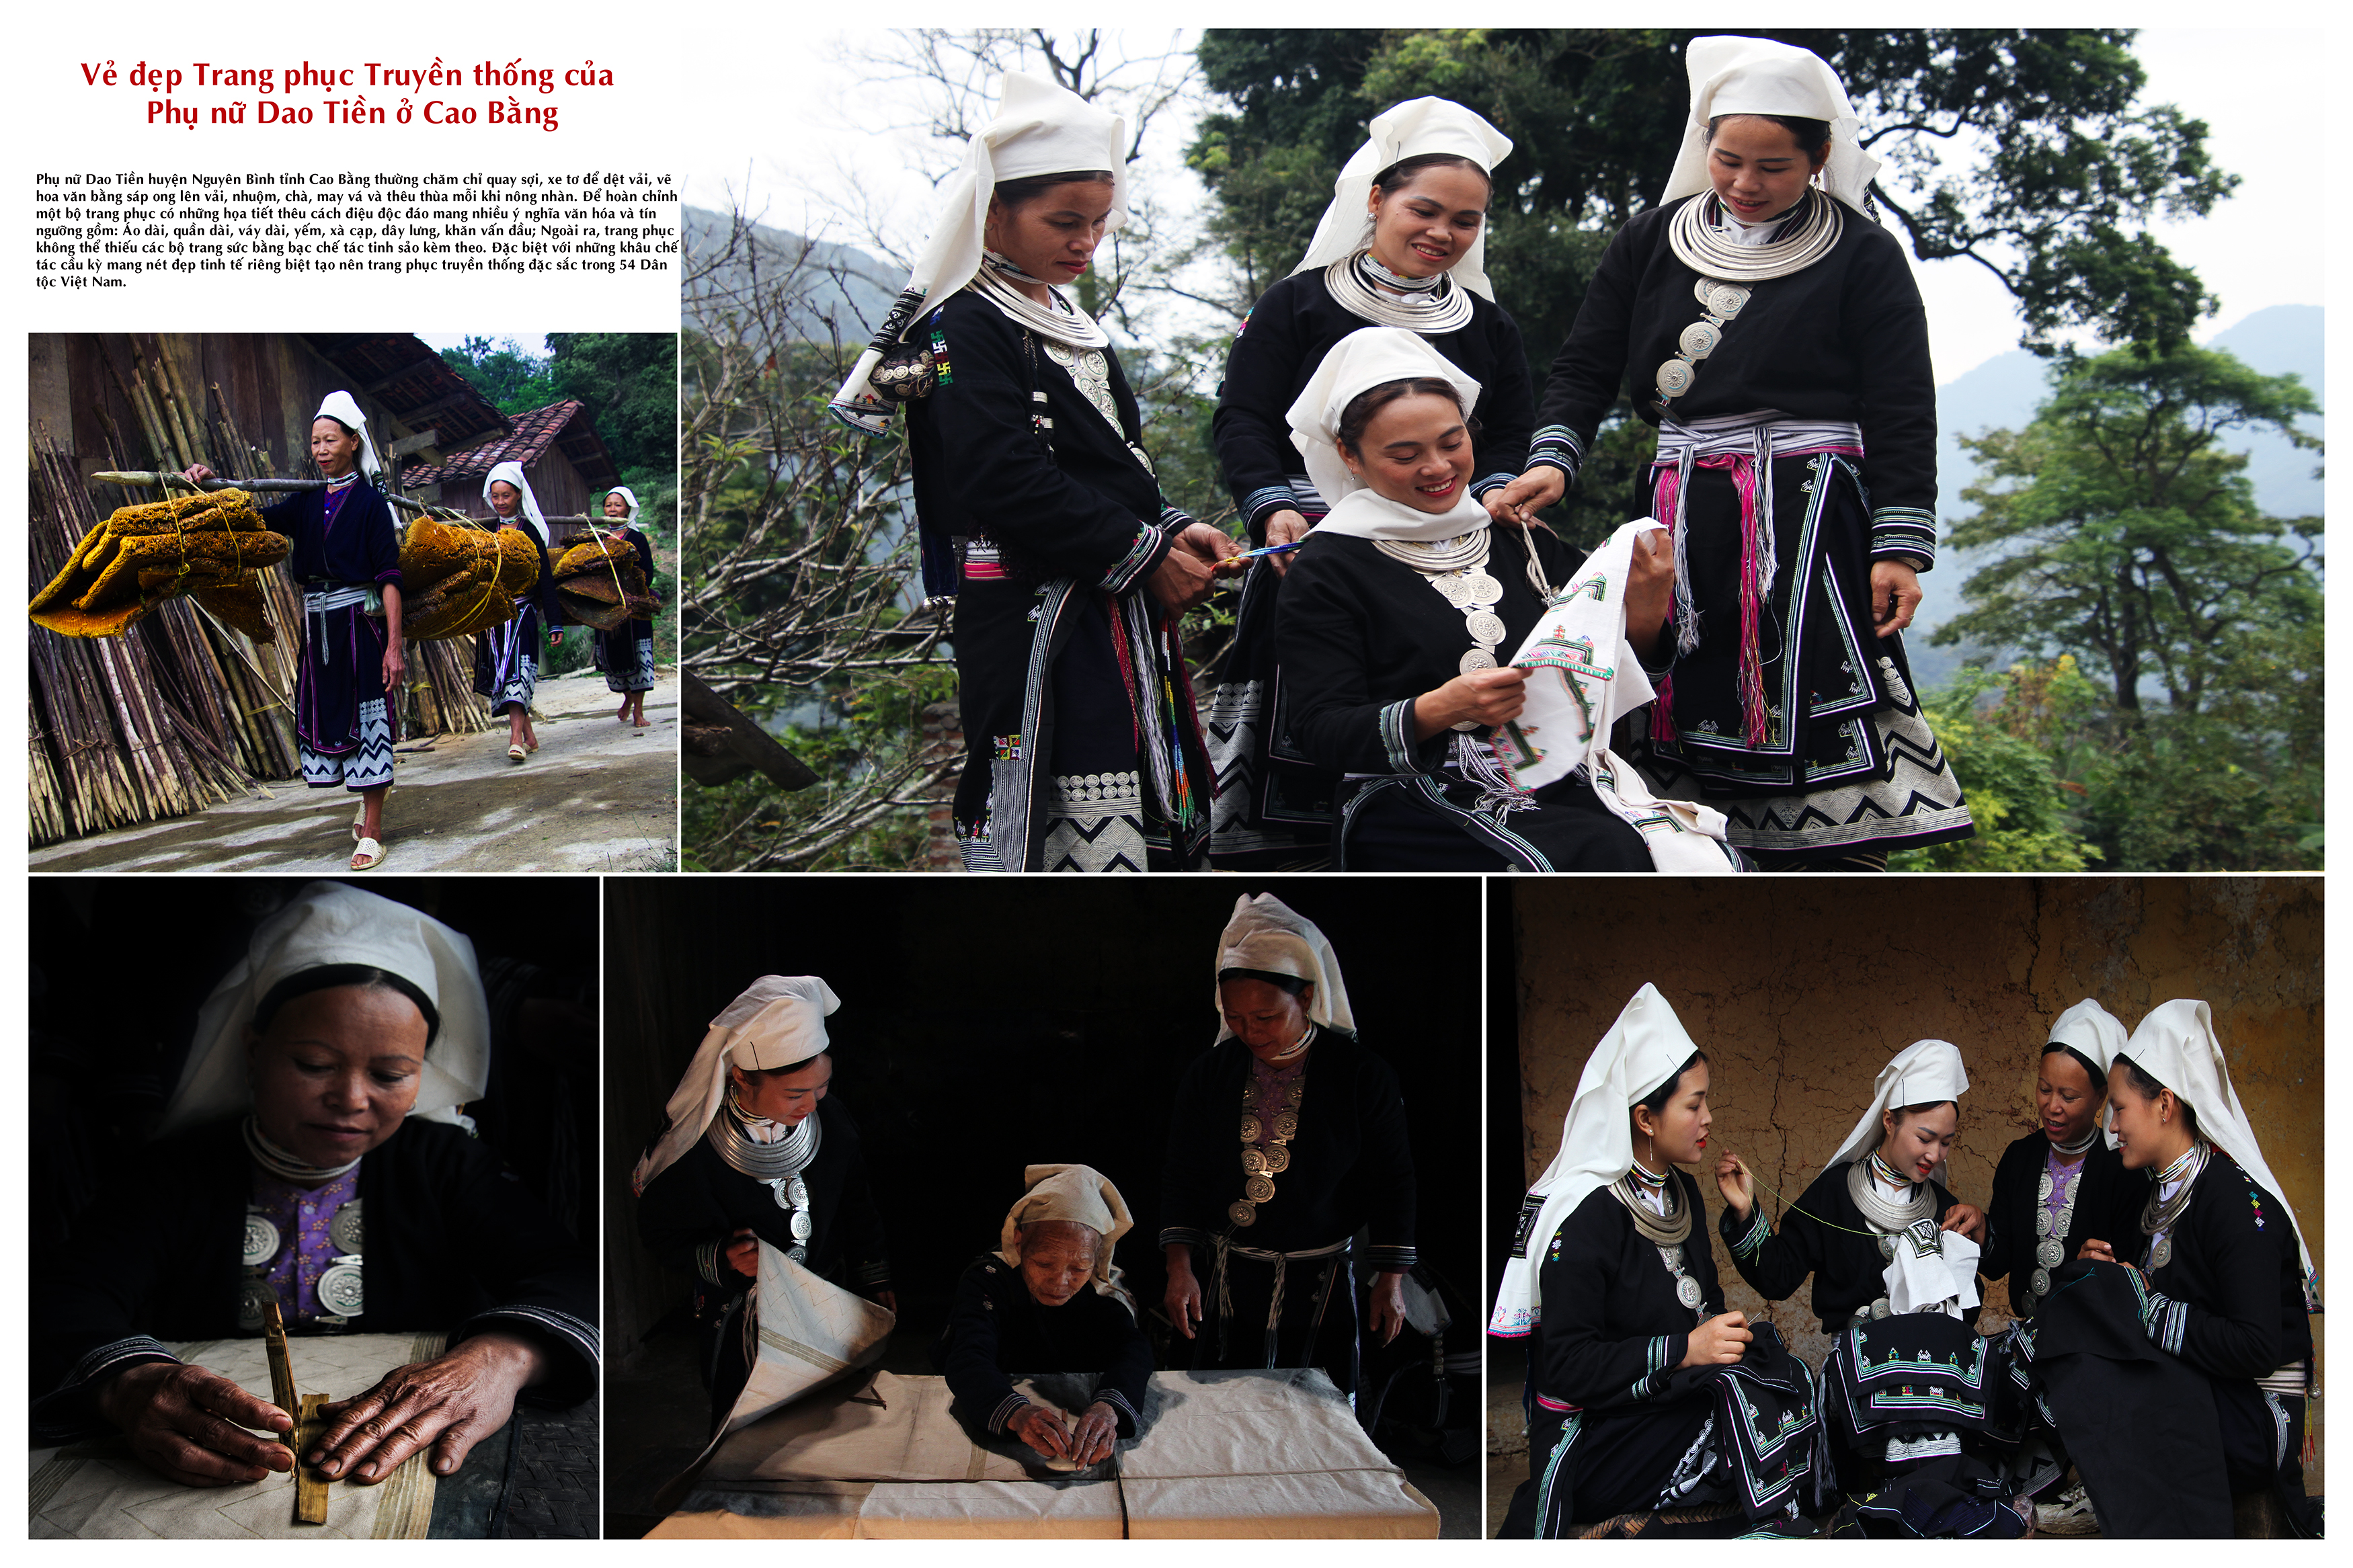 Vè đẹp Trang phục Truyền thống của Phụ nữ Dao Tiền ở Cao Bằng